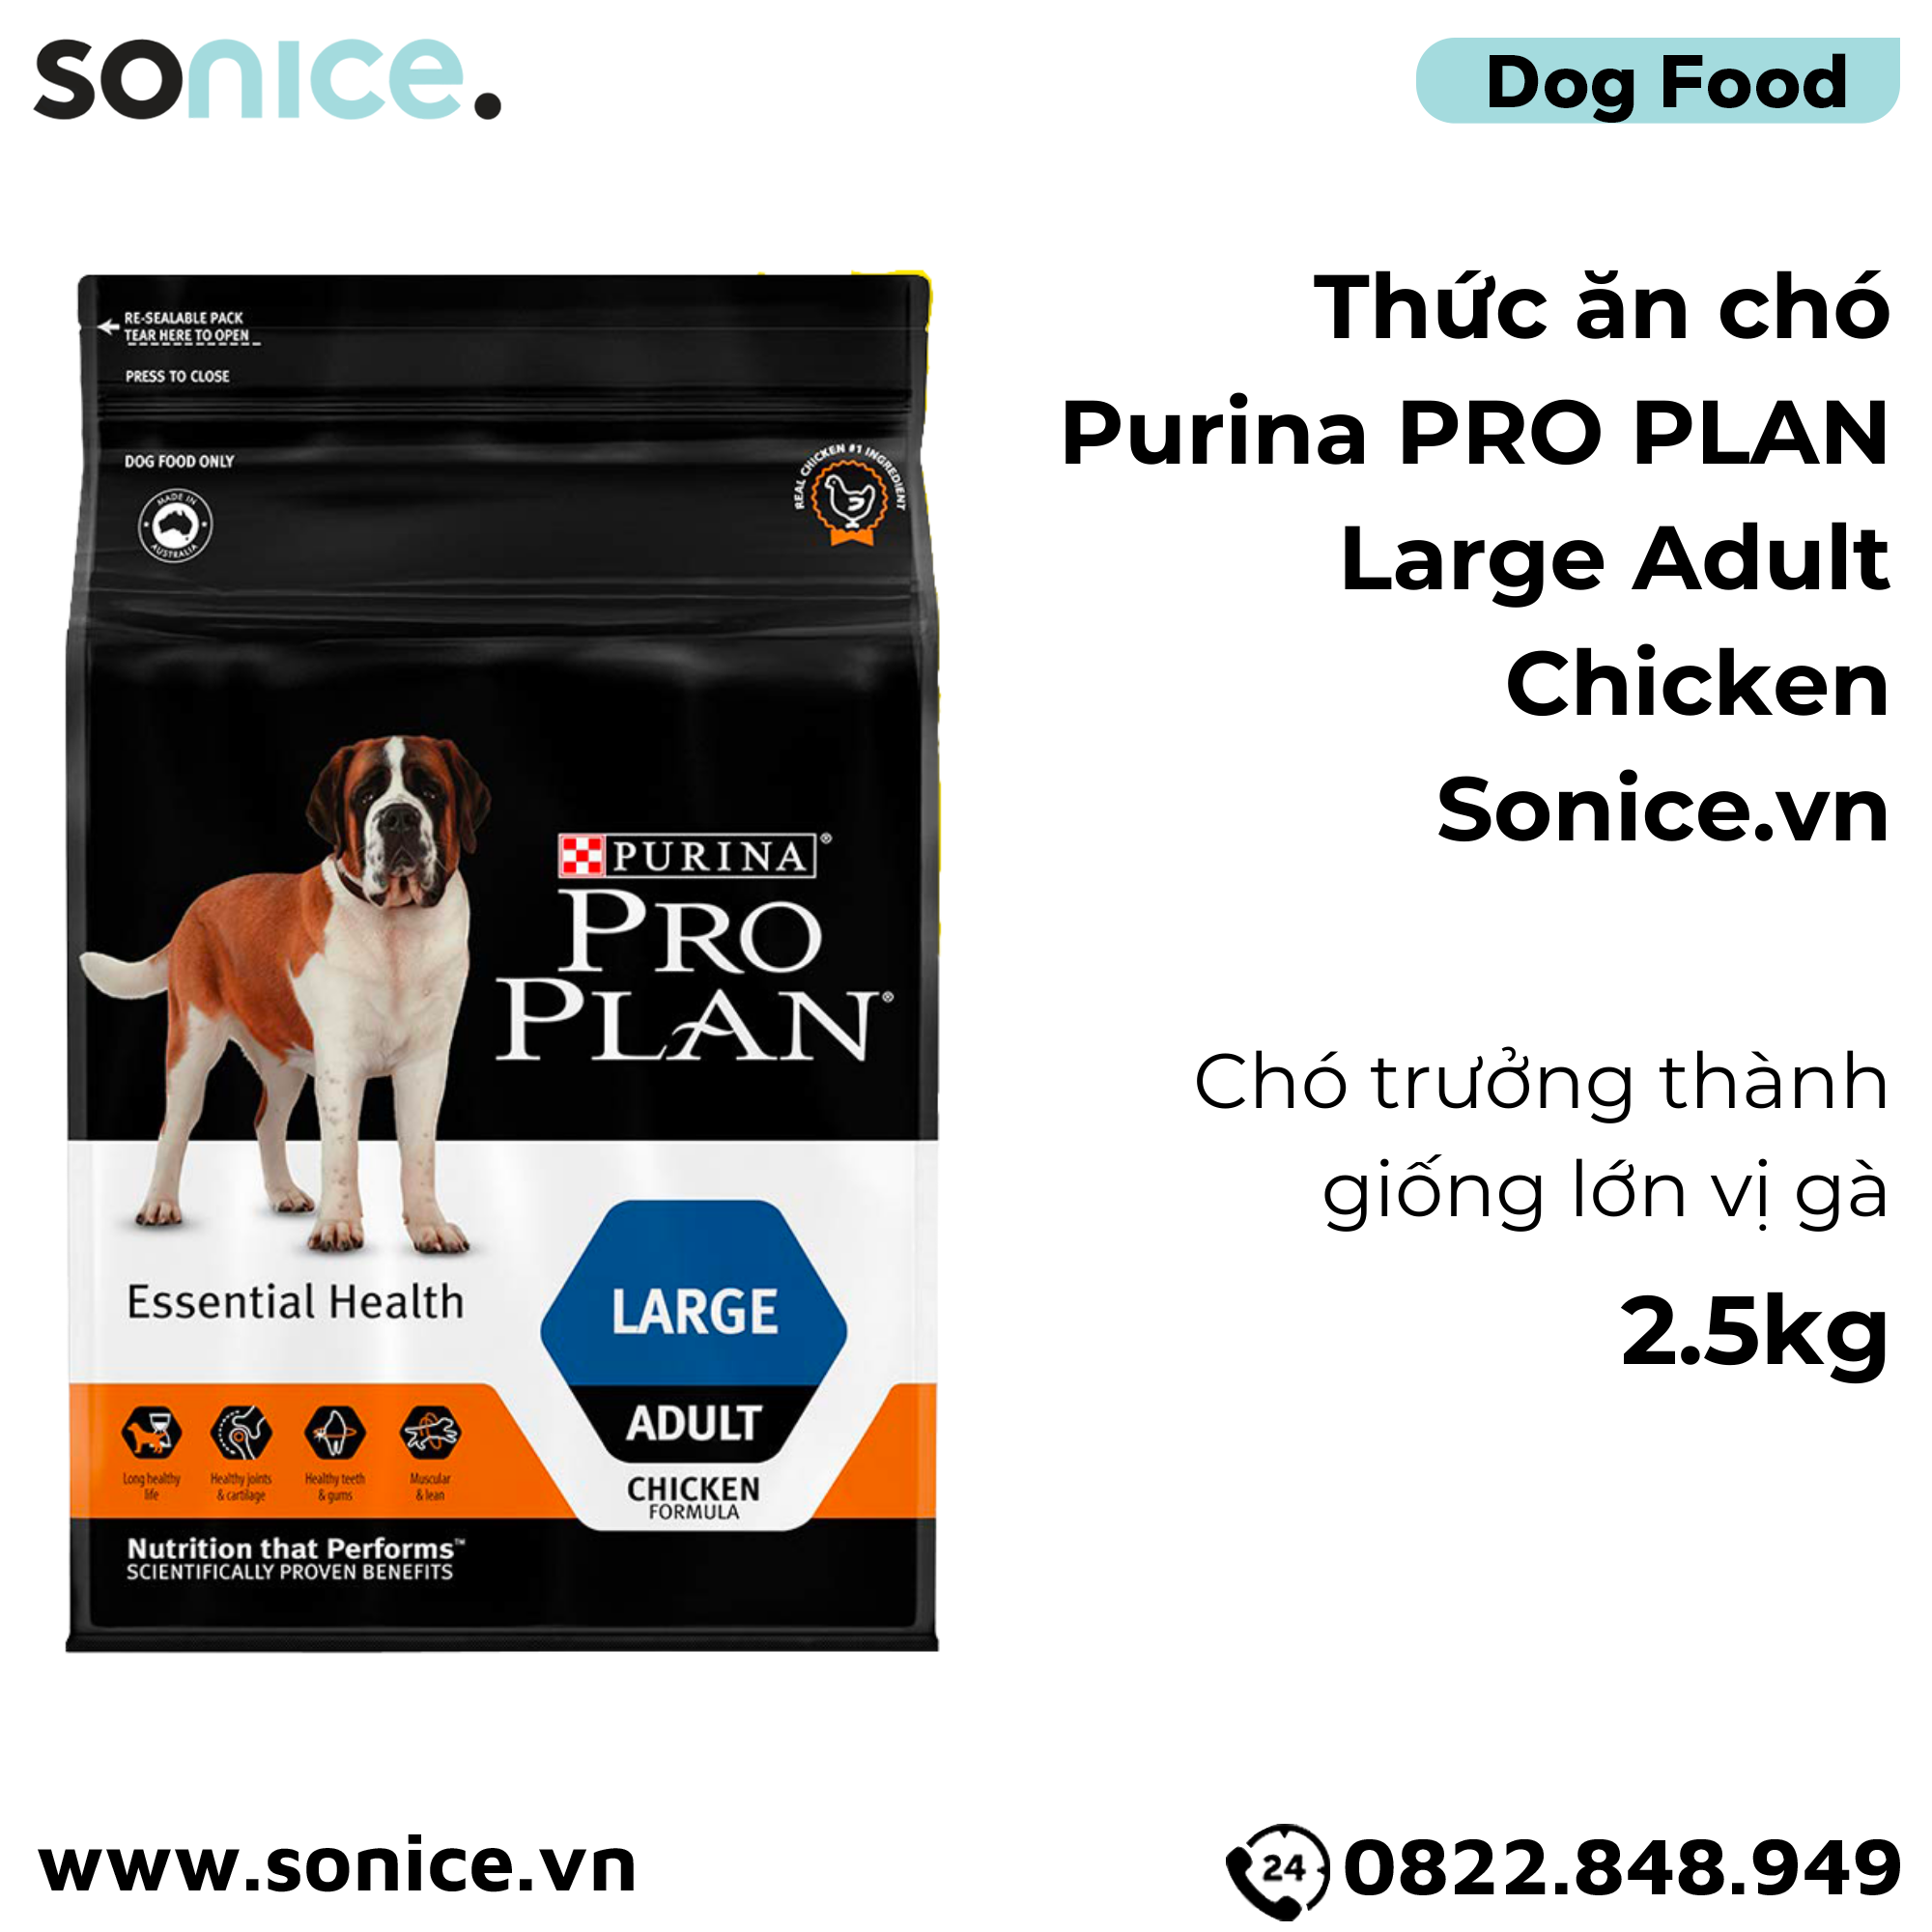  Thức ăn chó Purina PRO PLAN Large Adult Chicken 2.5kg - chó trưởng thành giống lớn vị gà SONICE. 